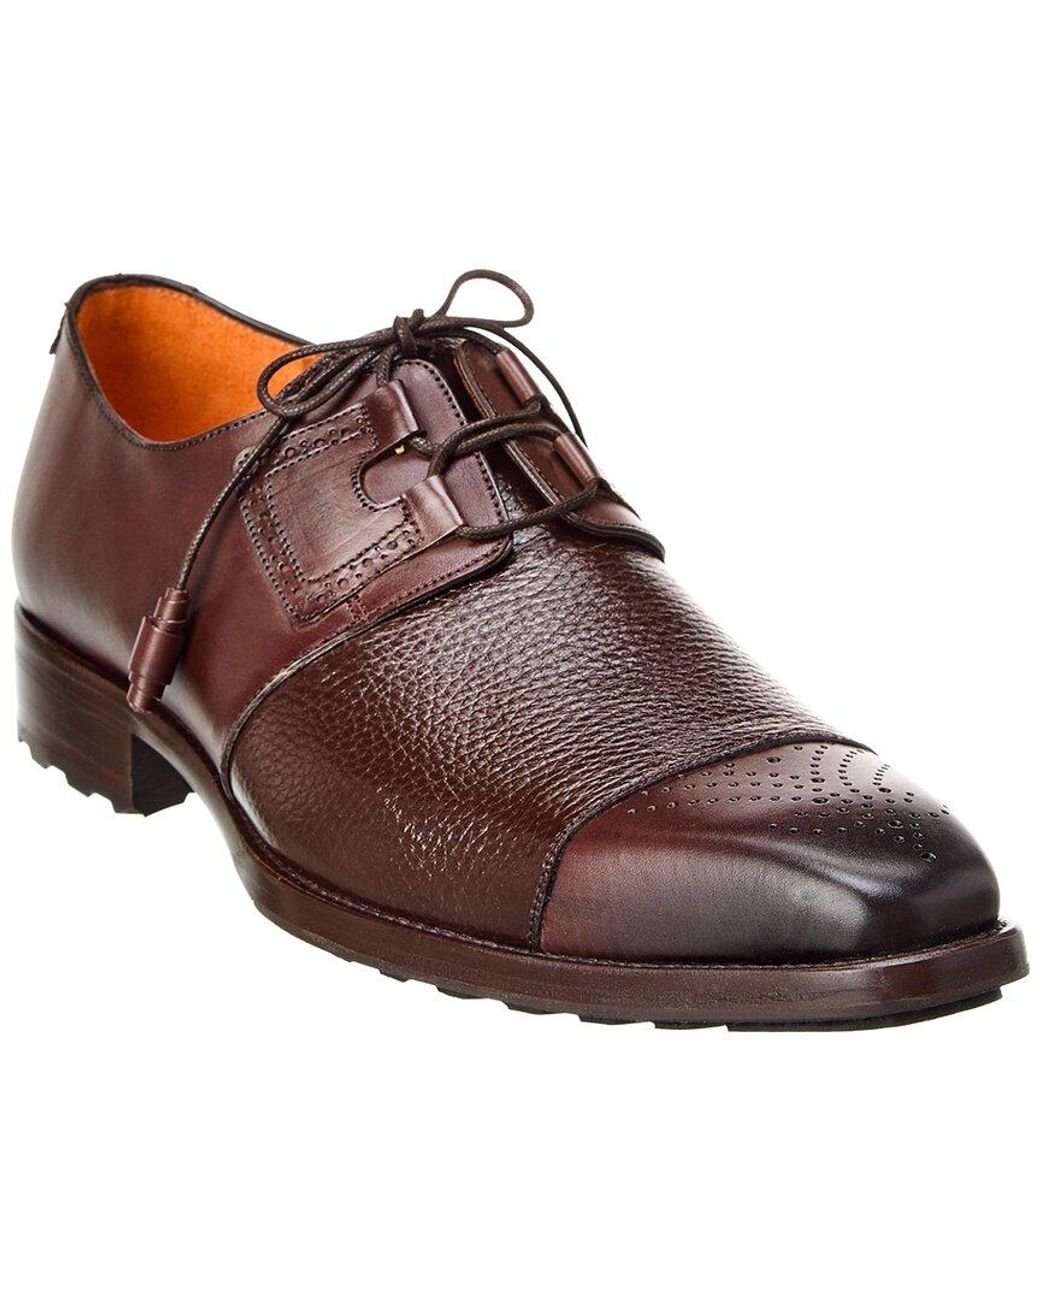 Mezlan S20307 Men's Shoes Black Velvet / Patent Leather Dress Derby Oxfords (MZS3427)